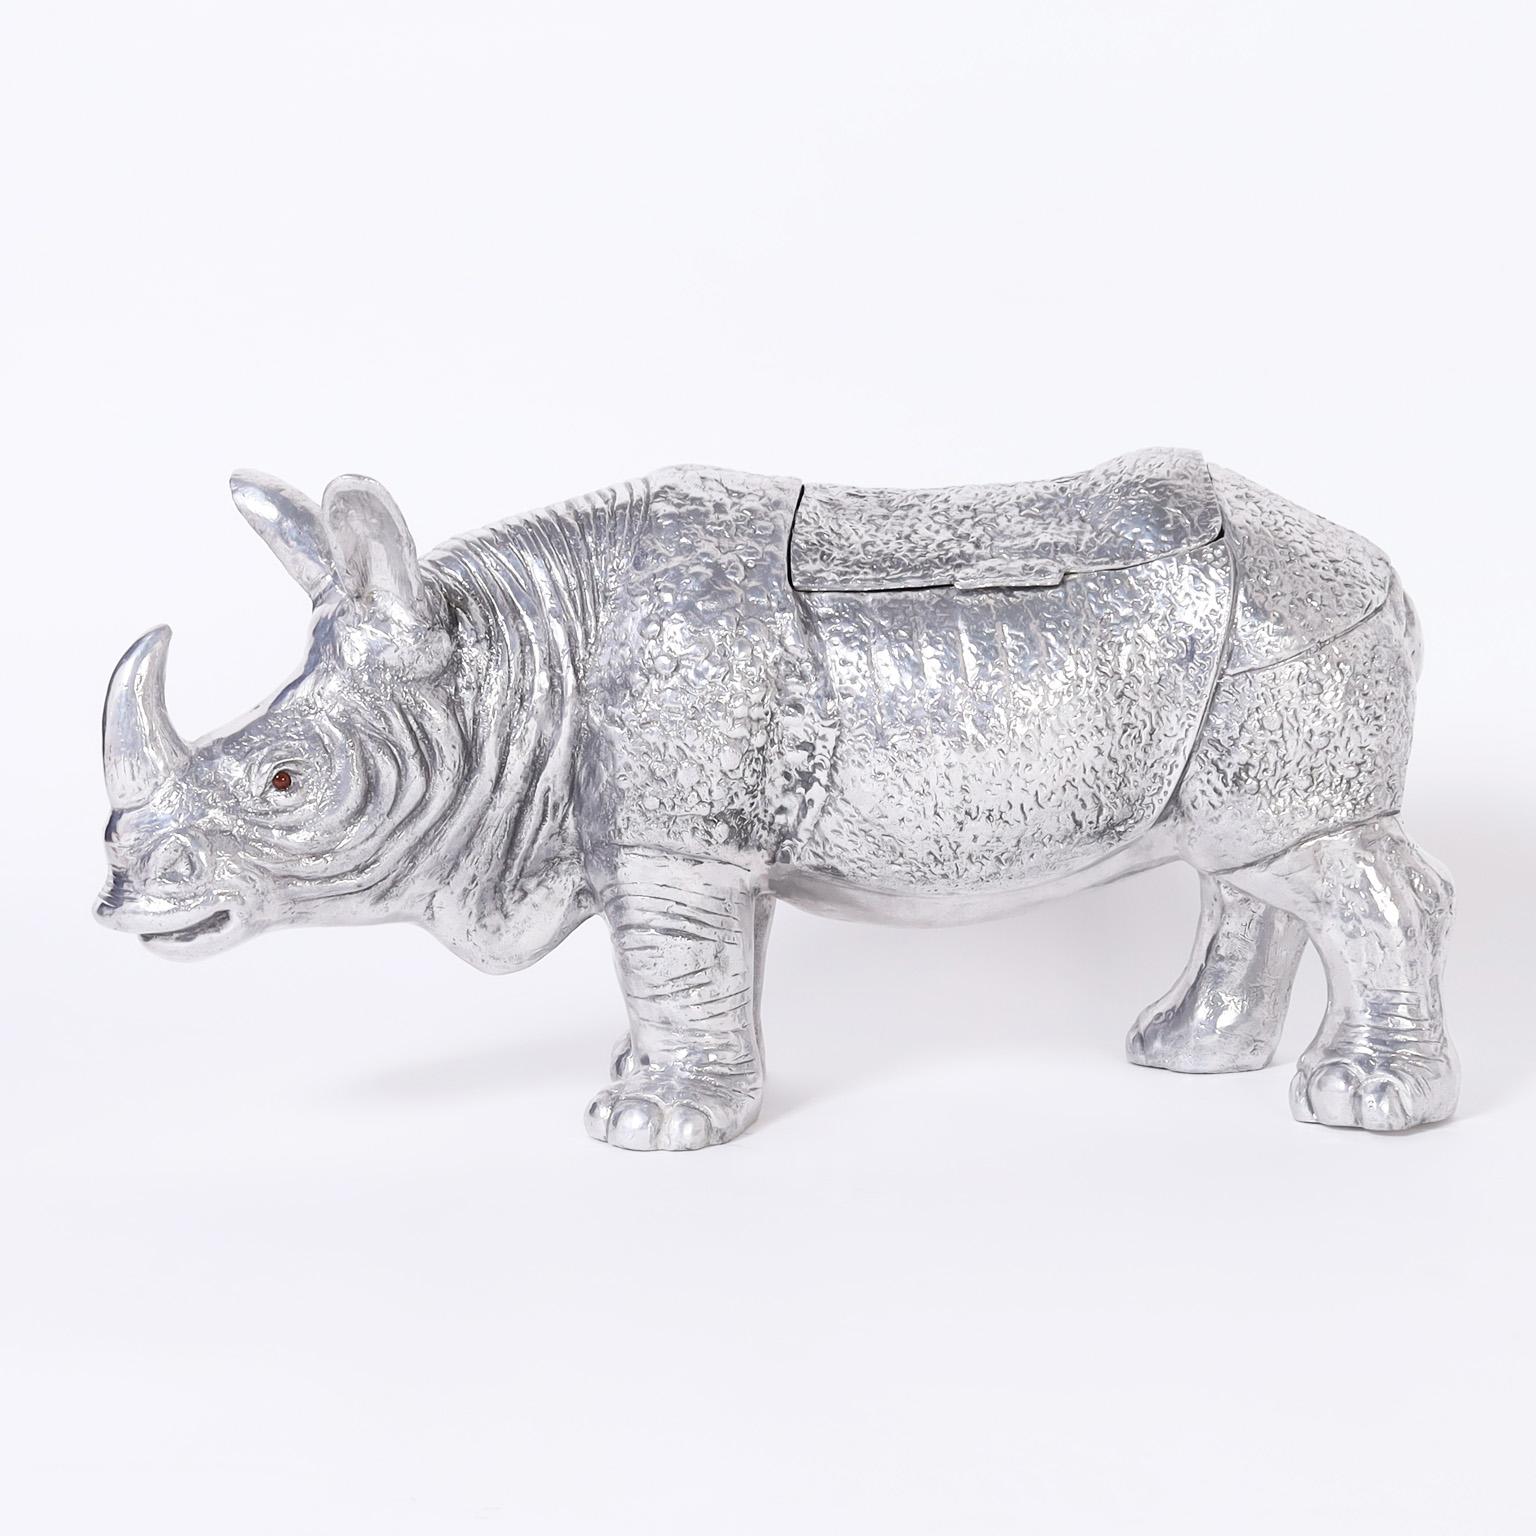 Remarquable sculpture du milieu du siècle d'un rhinocéros moulé en aluminium avec son profil iconique et son compartiment de rangement à couvercle.